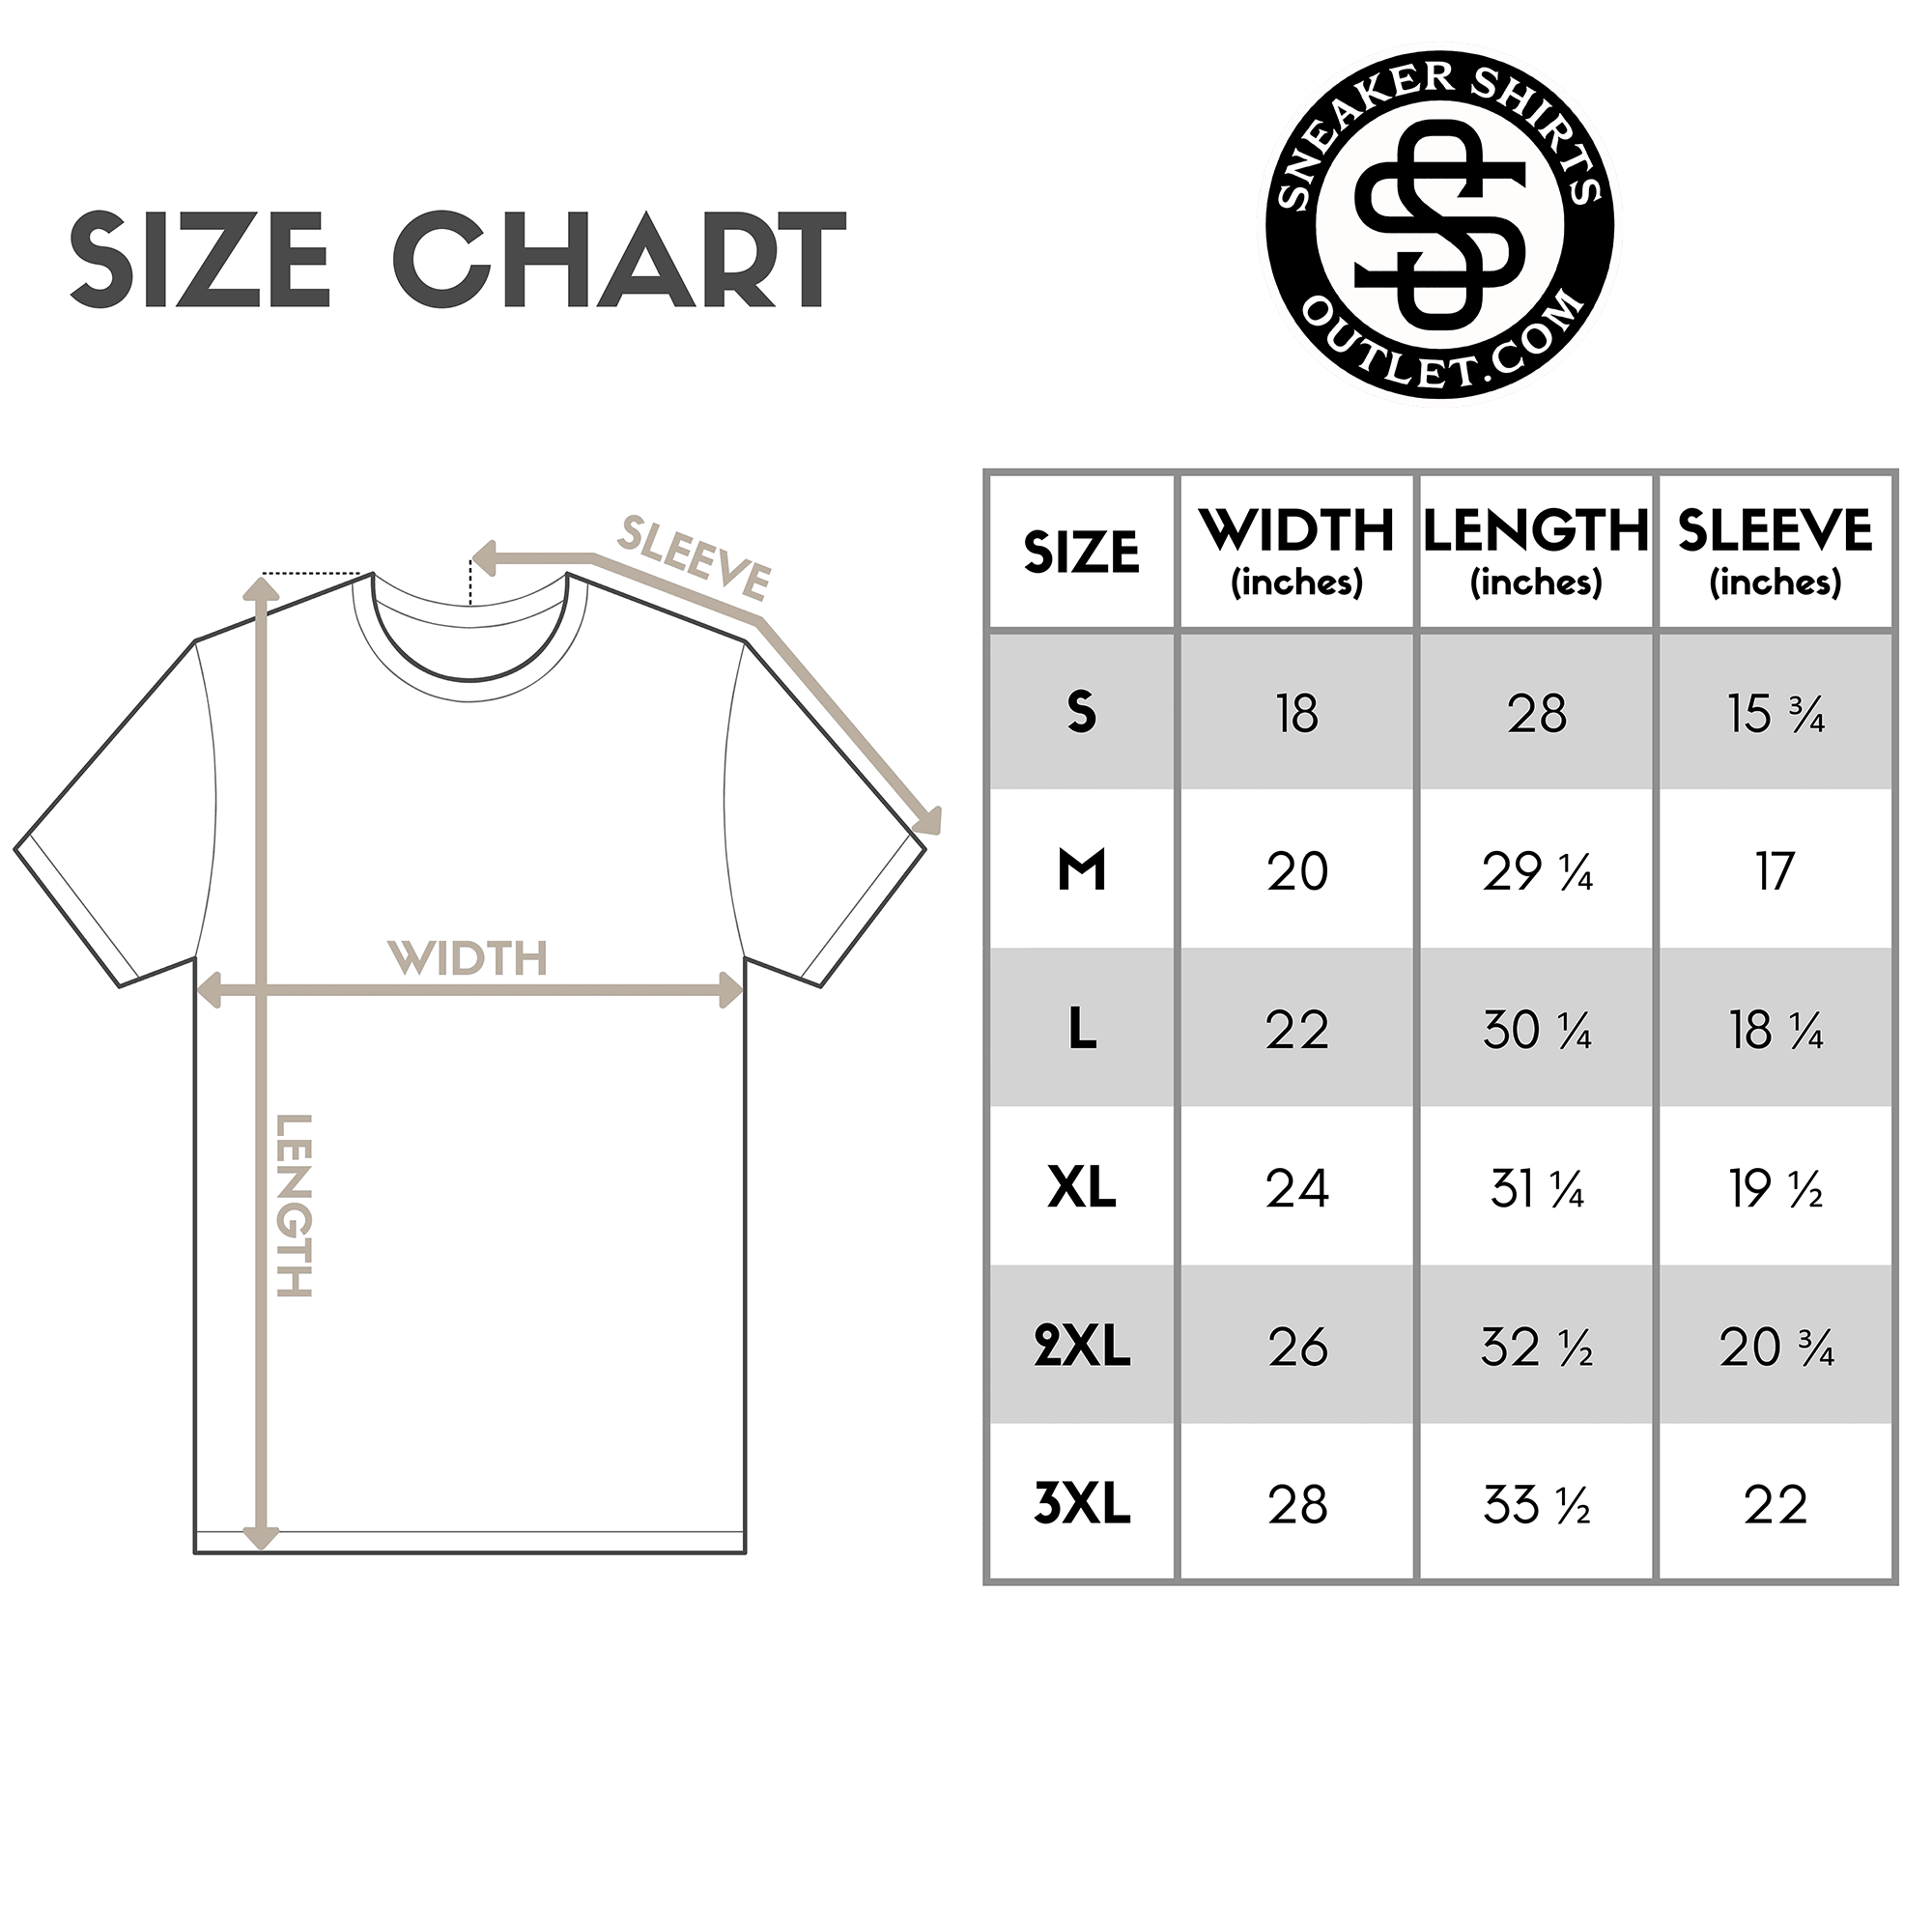 size chart 23 Melting Shirt Air Jordan 6 Carmine photo